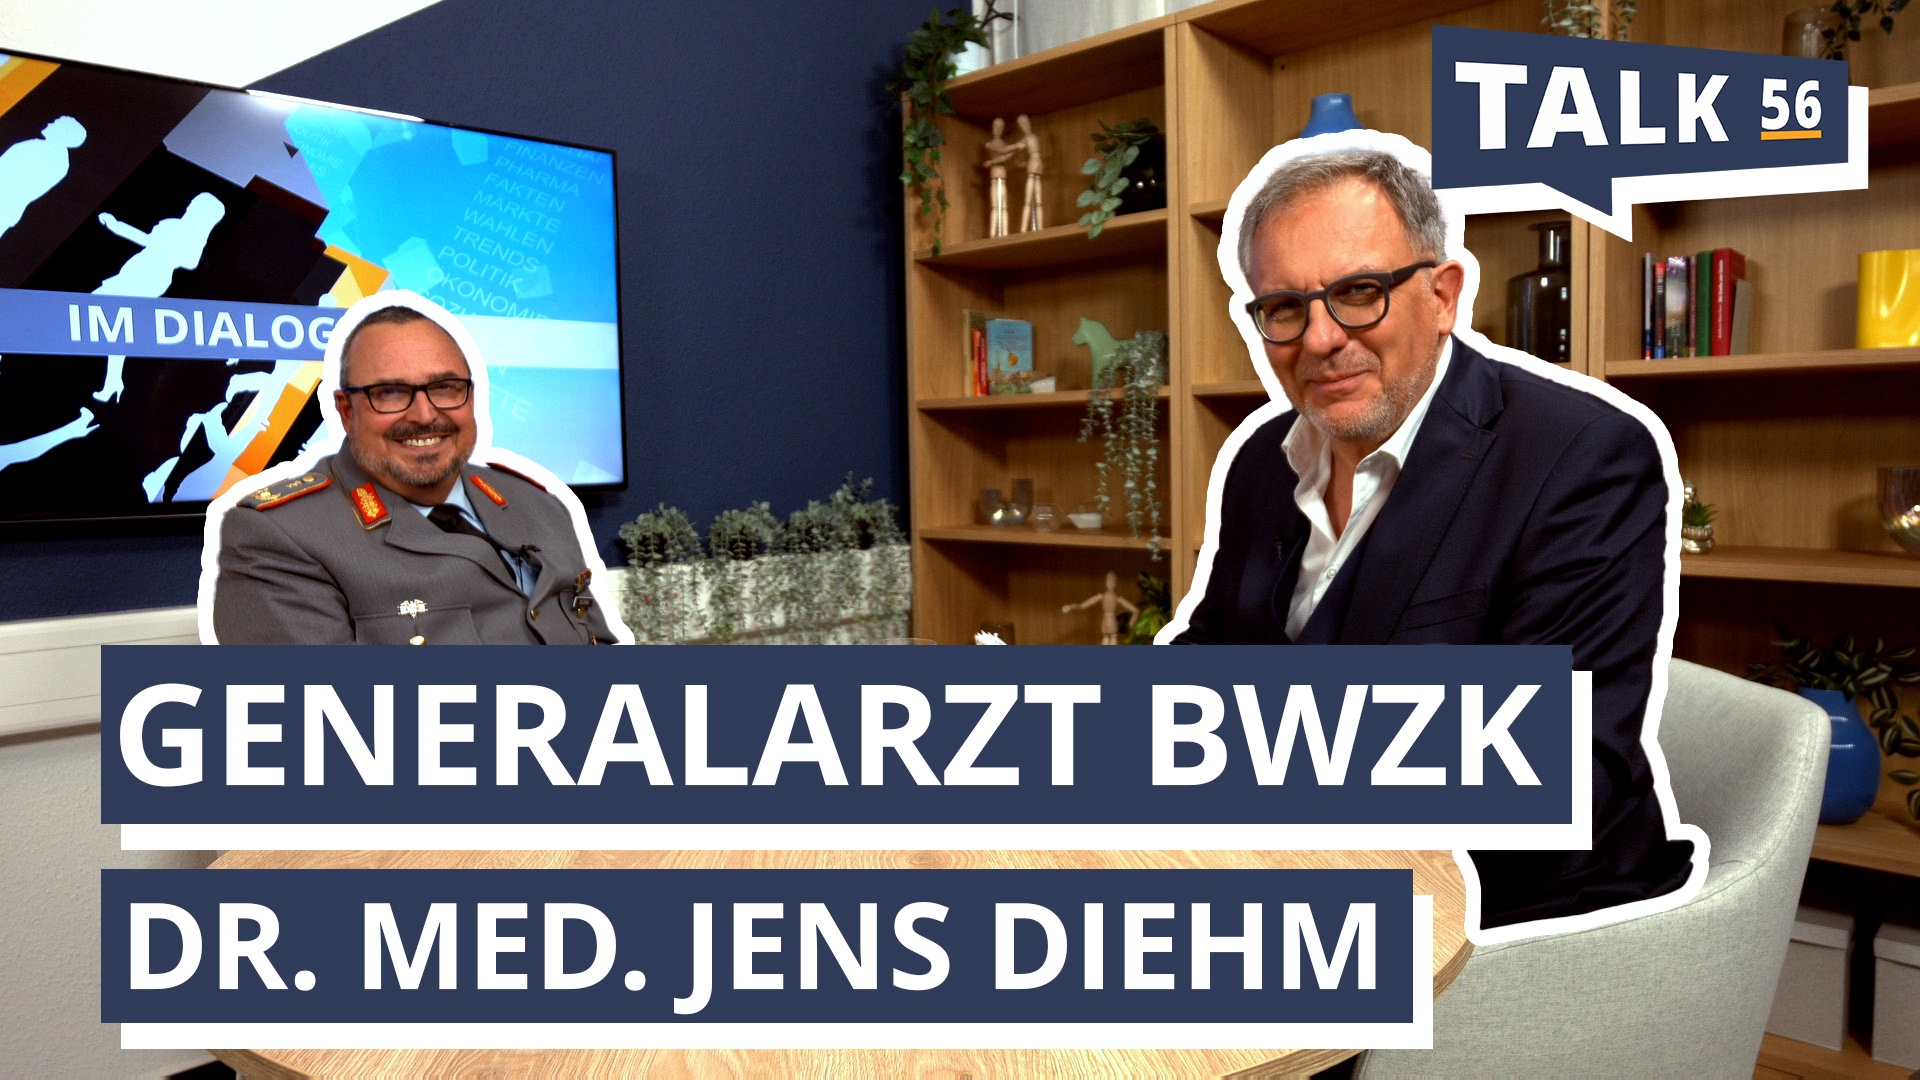 Im Dialog mit Dr. Jens Diehm, Generalarzt des Bundeswehrzentralkrankenhauses